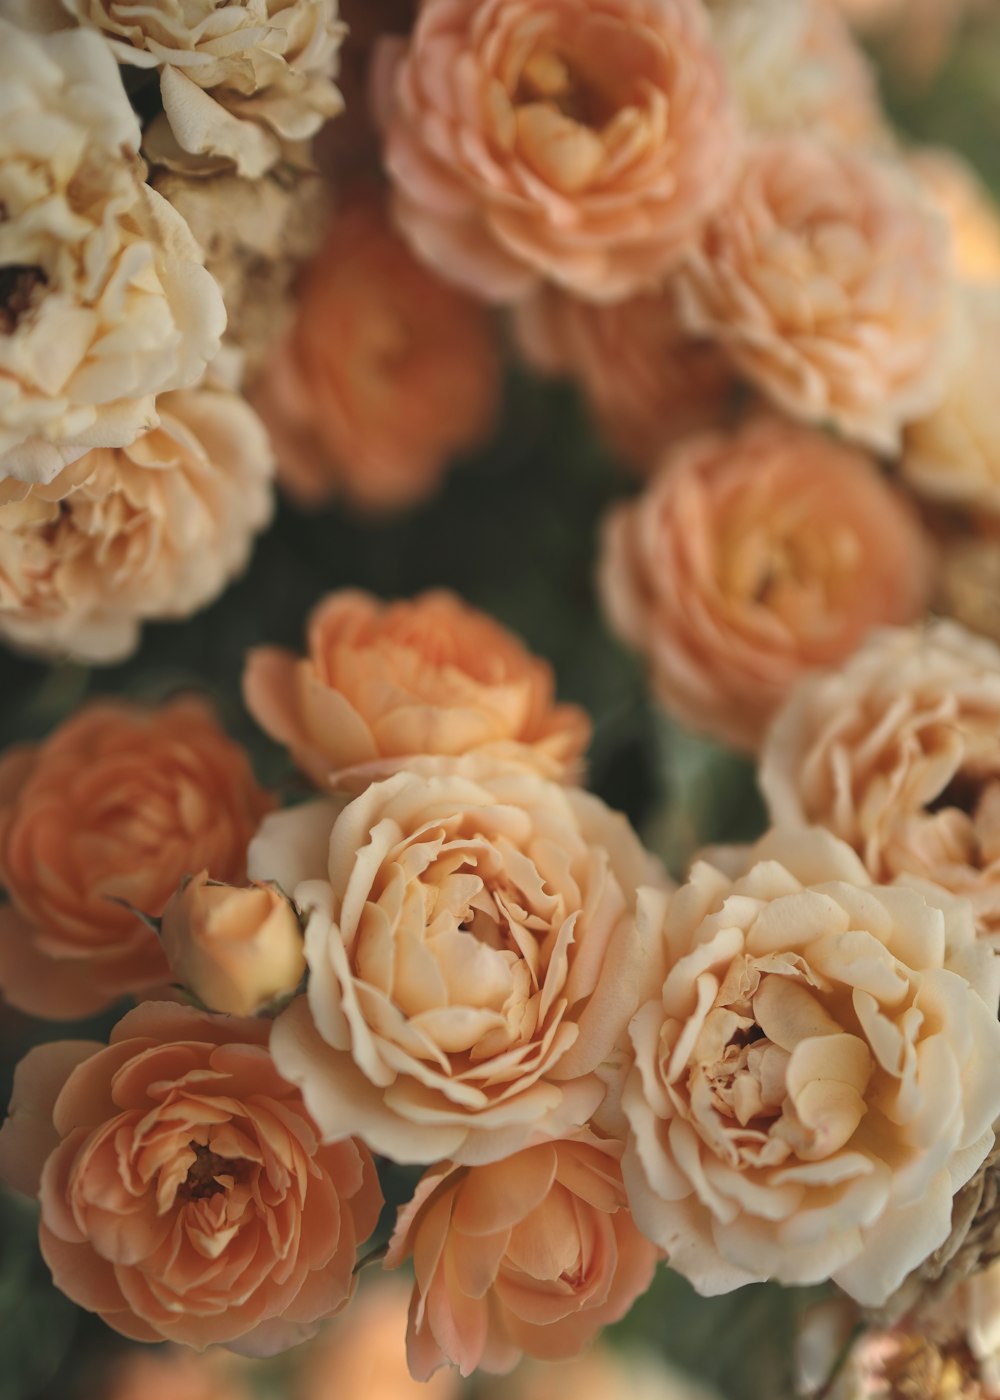 Bạn đang muốn tìm kiếm những hình ảnh đẹp về hoa cam mà có thể tải về miễn phí? Đừng bỏ qua hình ảnh này, nơi mà những bông hoa cam được trình bày một cách hoàn hảo trên một nền trắng đẹp mắt. Đây chính là hình ảnh hoàn hảo để tải về và sử dụng cho mục đích cá nhân của bạn!